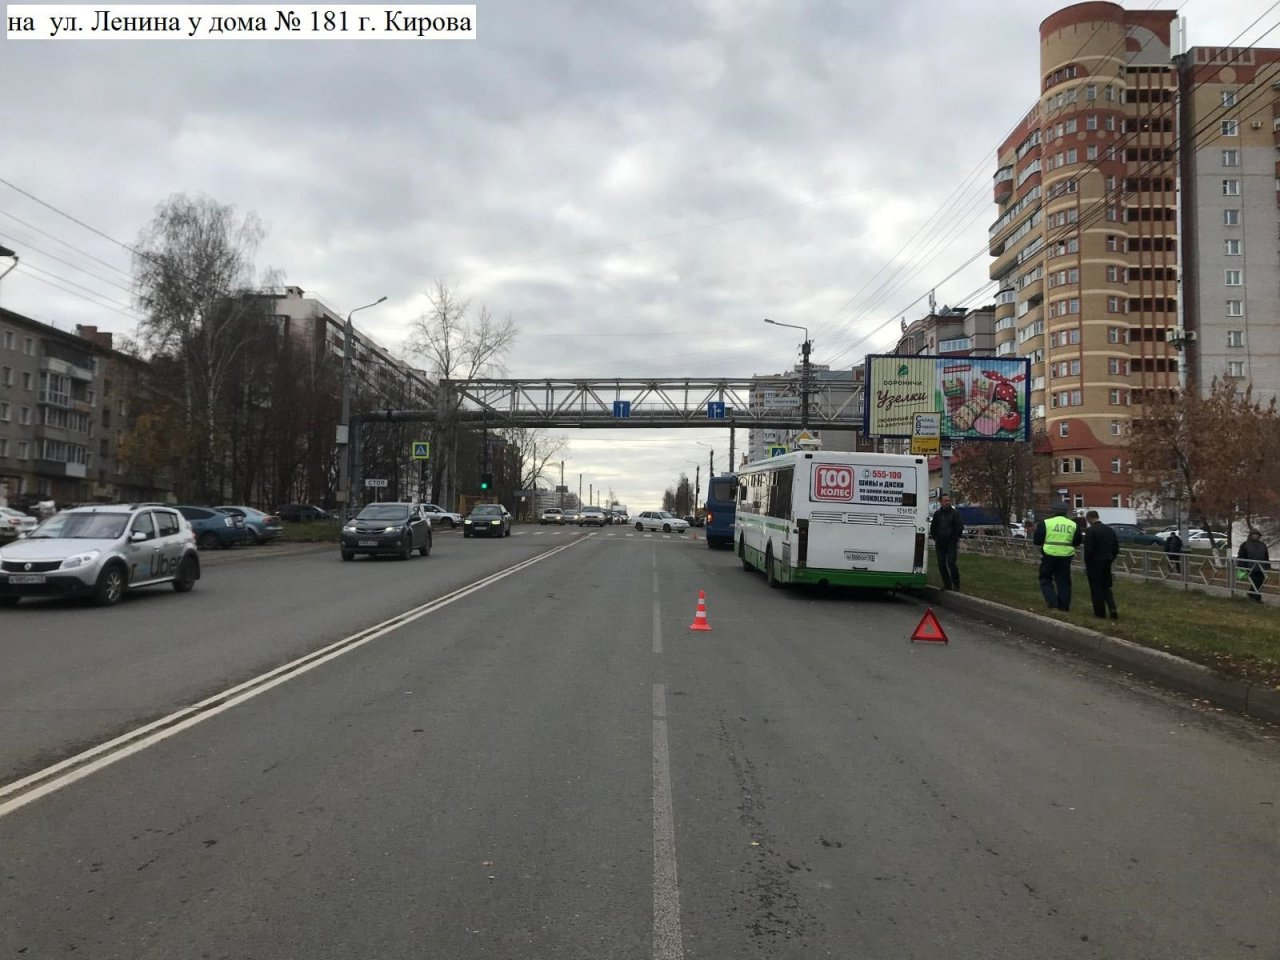 В Кирове из-за экстренного торможения автобуса пострадала женщина